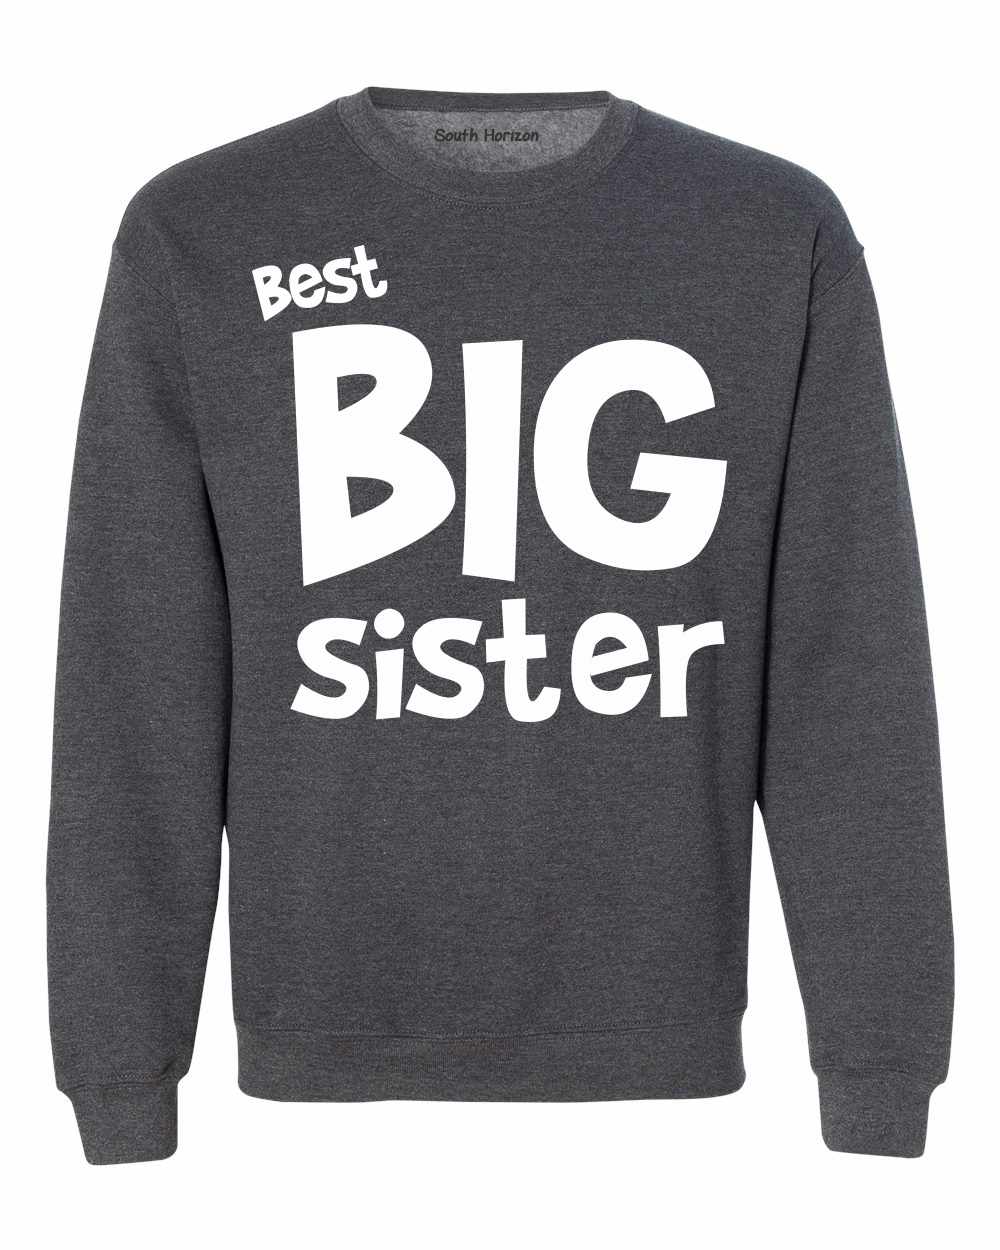 Best Big Sister on SweatShirt (#1139-11)